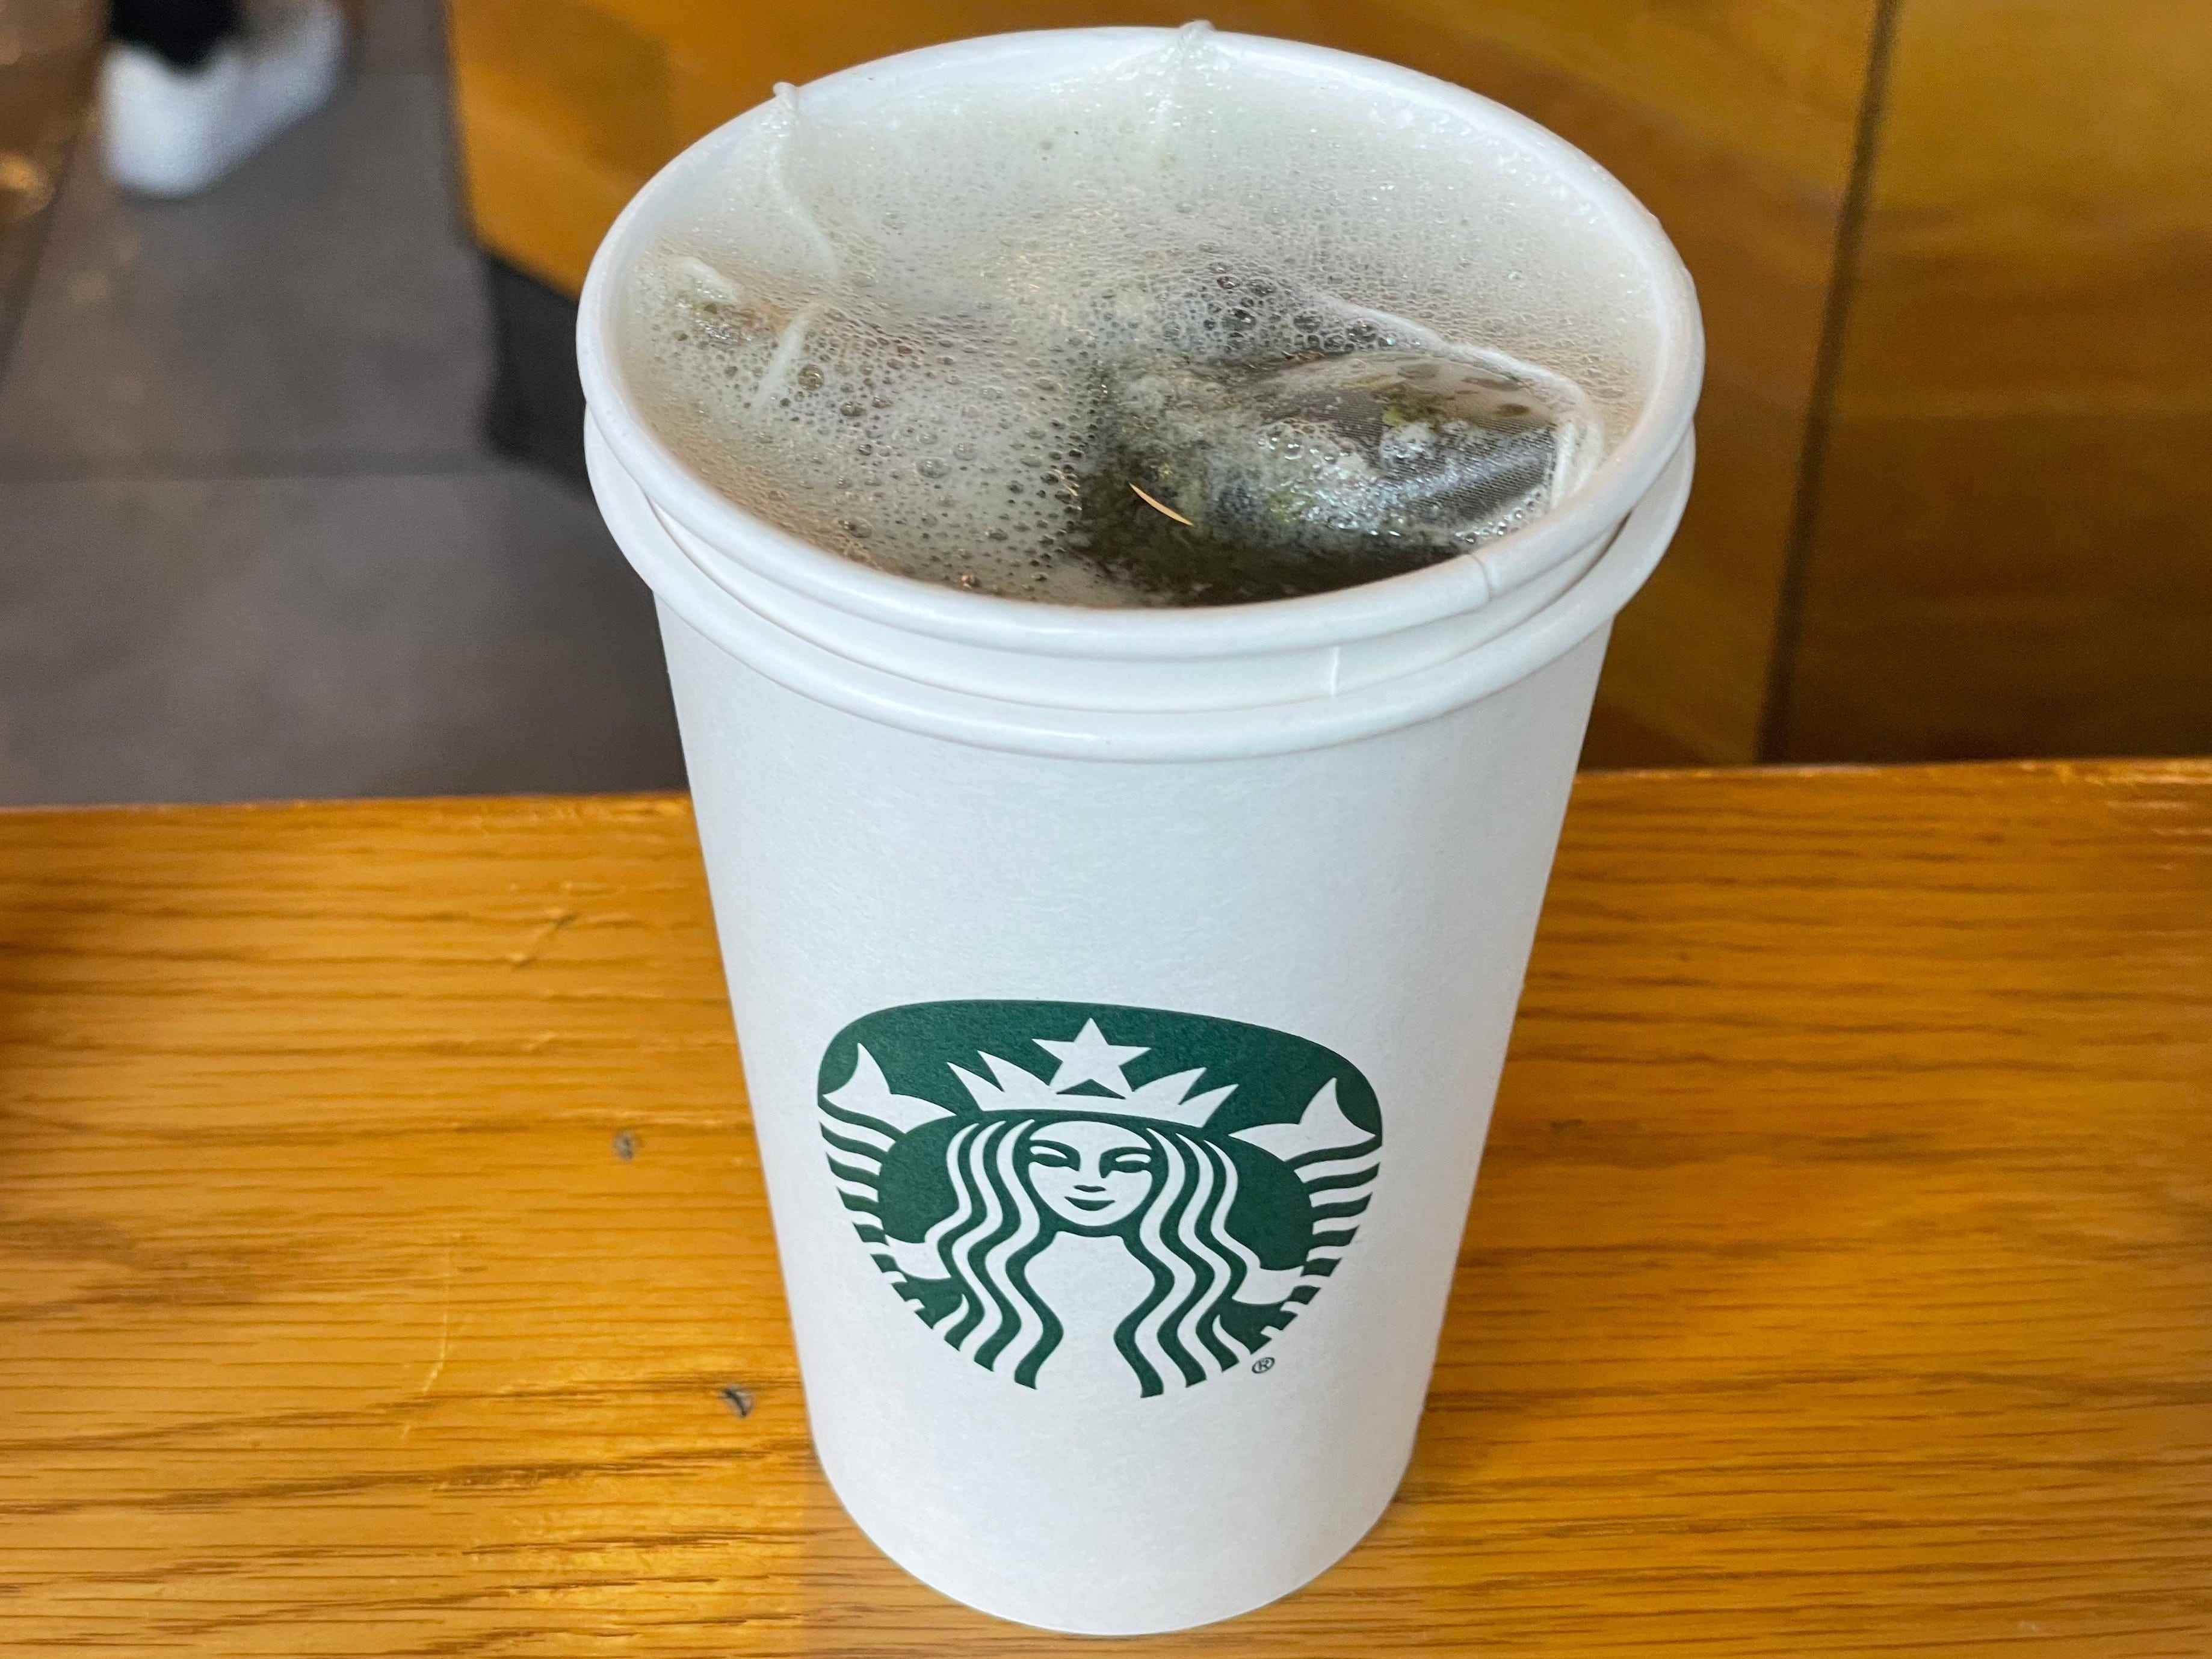 Honig-Zitrus-Minze-Tee von Starbucks